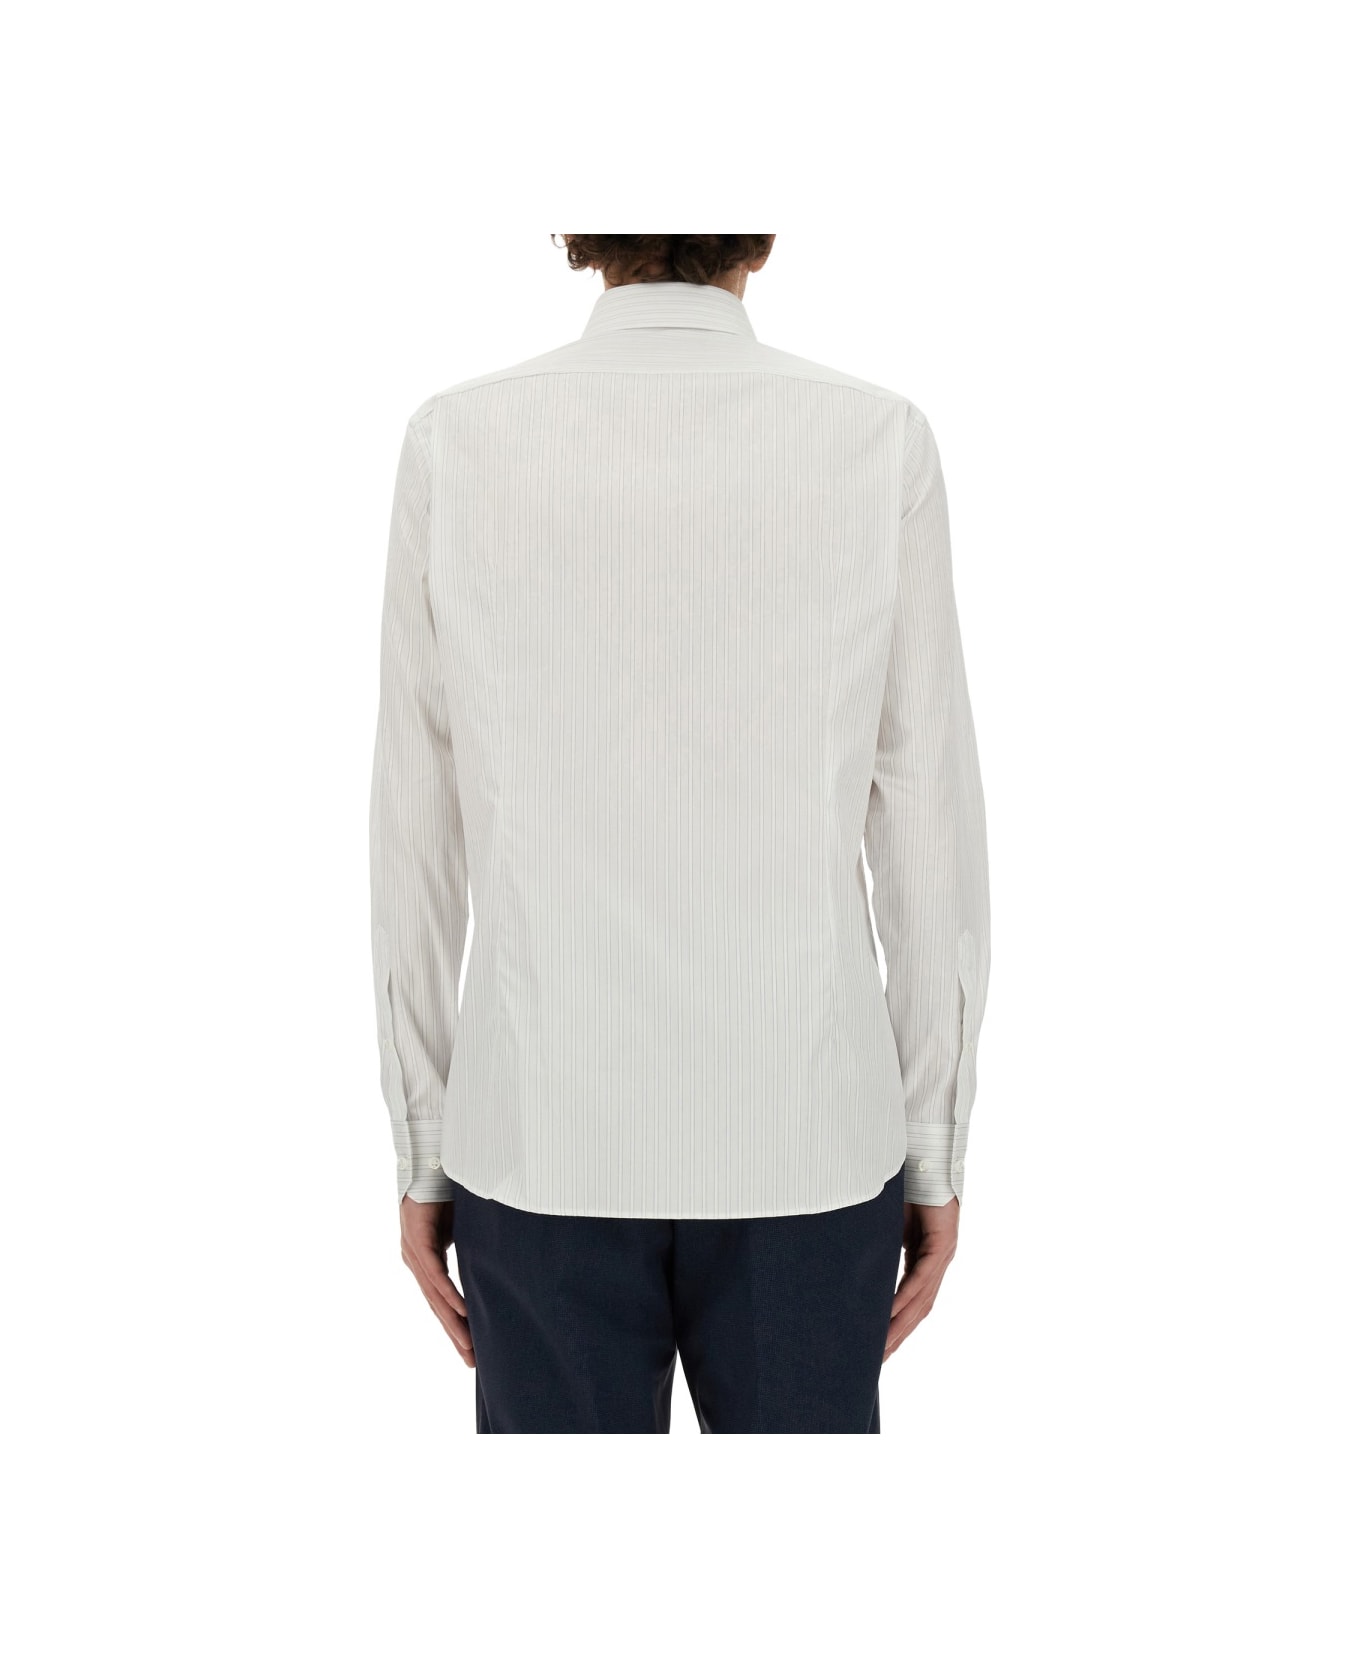 Hugo Boss Regular Fit Shirt - WHITE